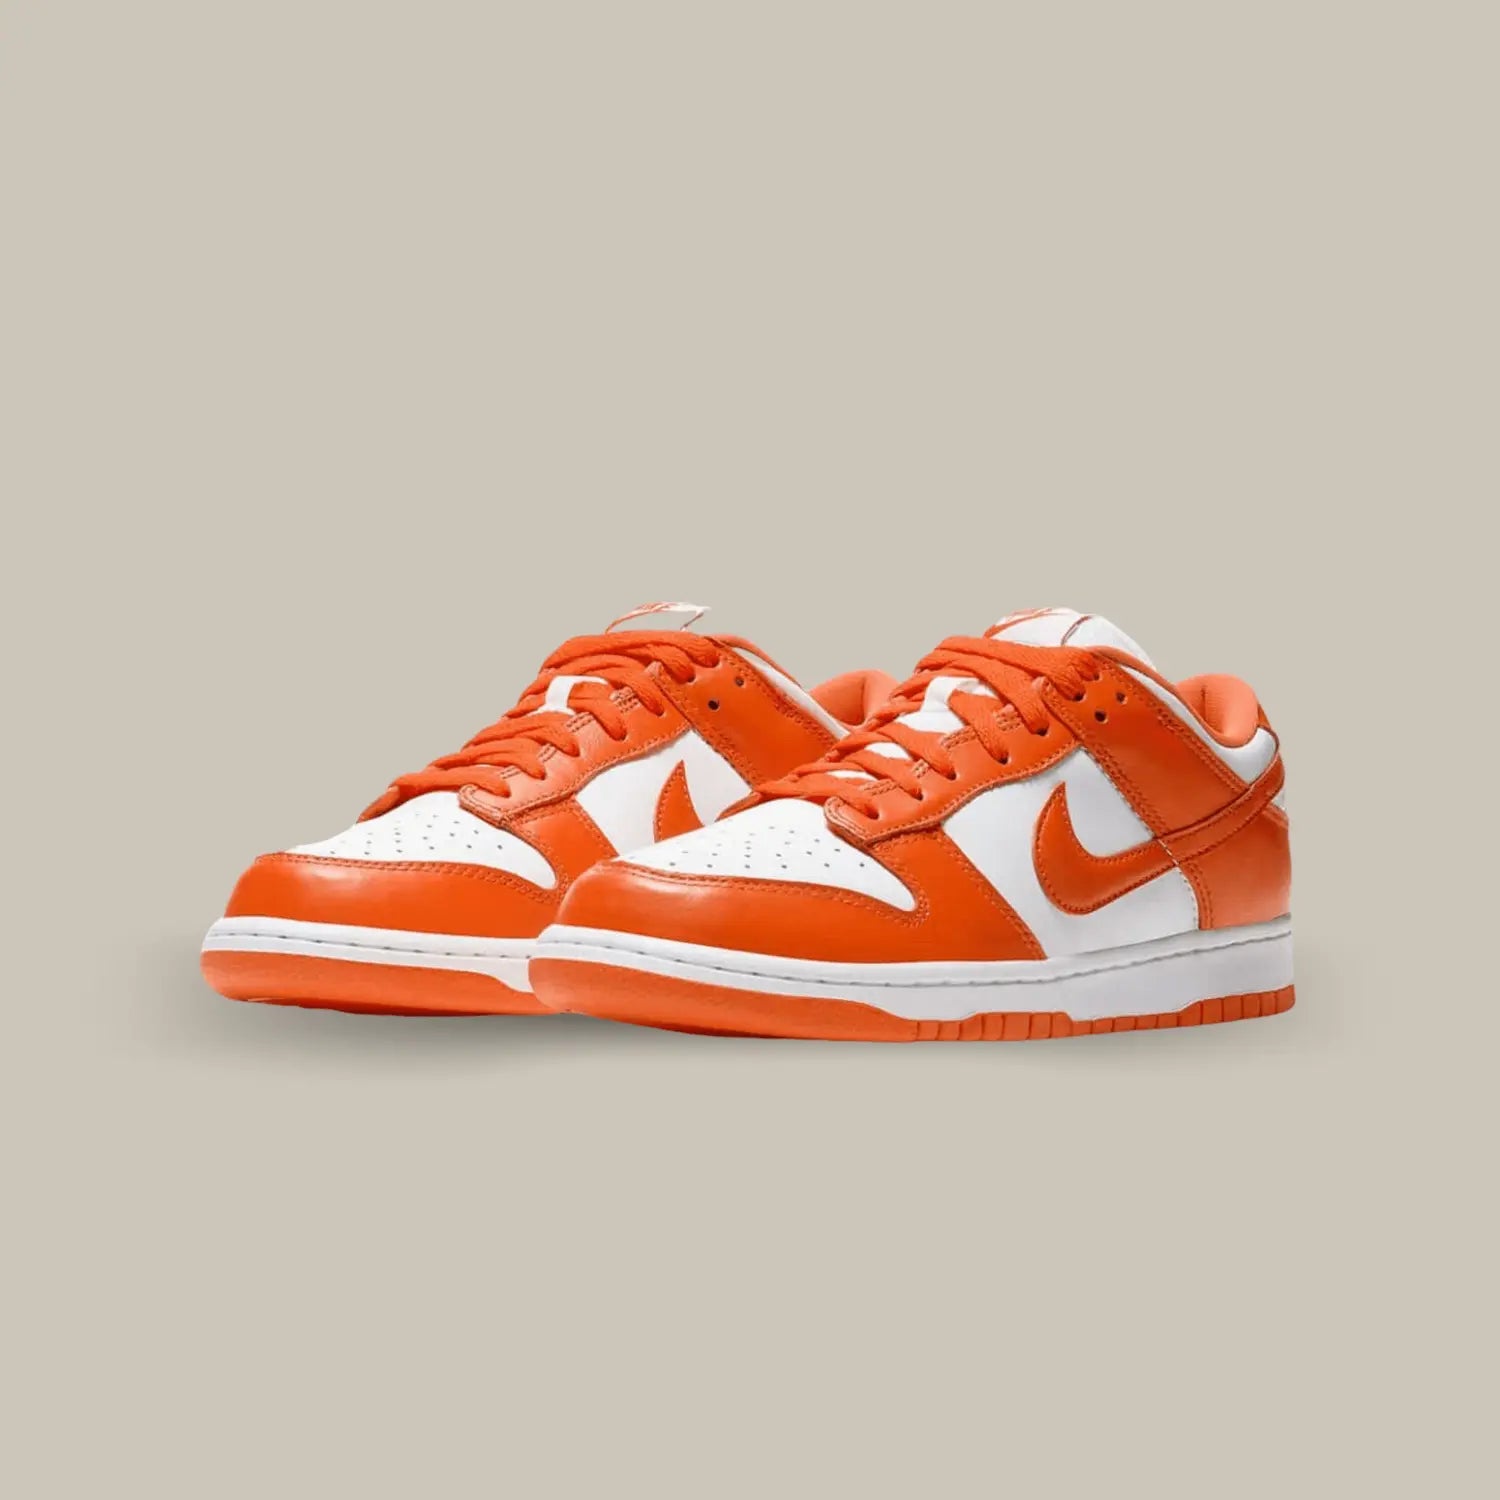 La Nike Dunk Low Syracuse se pare d’une empeigne en cuir blanc sublimée par des empiècements orange, reprenant les couleurs de l’équipe universitaire de Syracuse. On note des lacets orange assortis, ainsi qu’un branding Nike sur le talon ainsi que sur la languette.